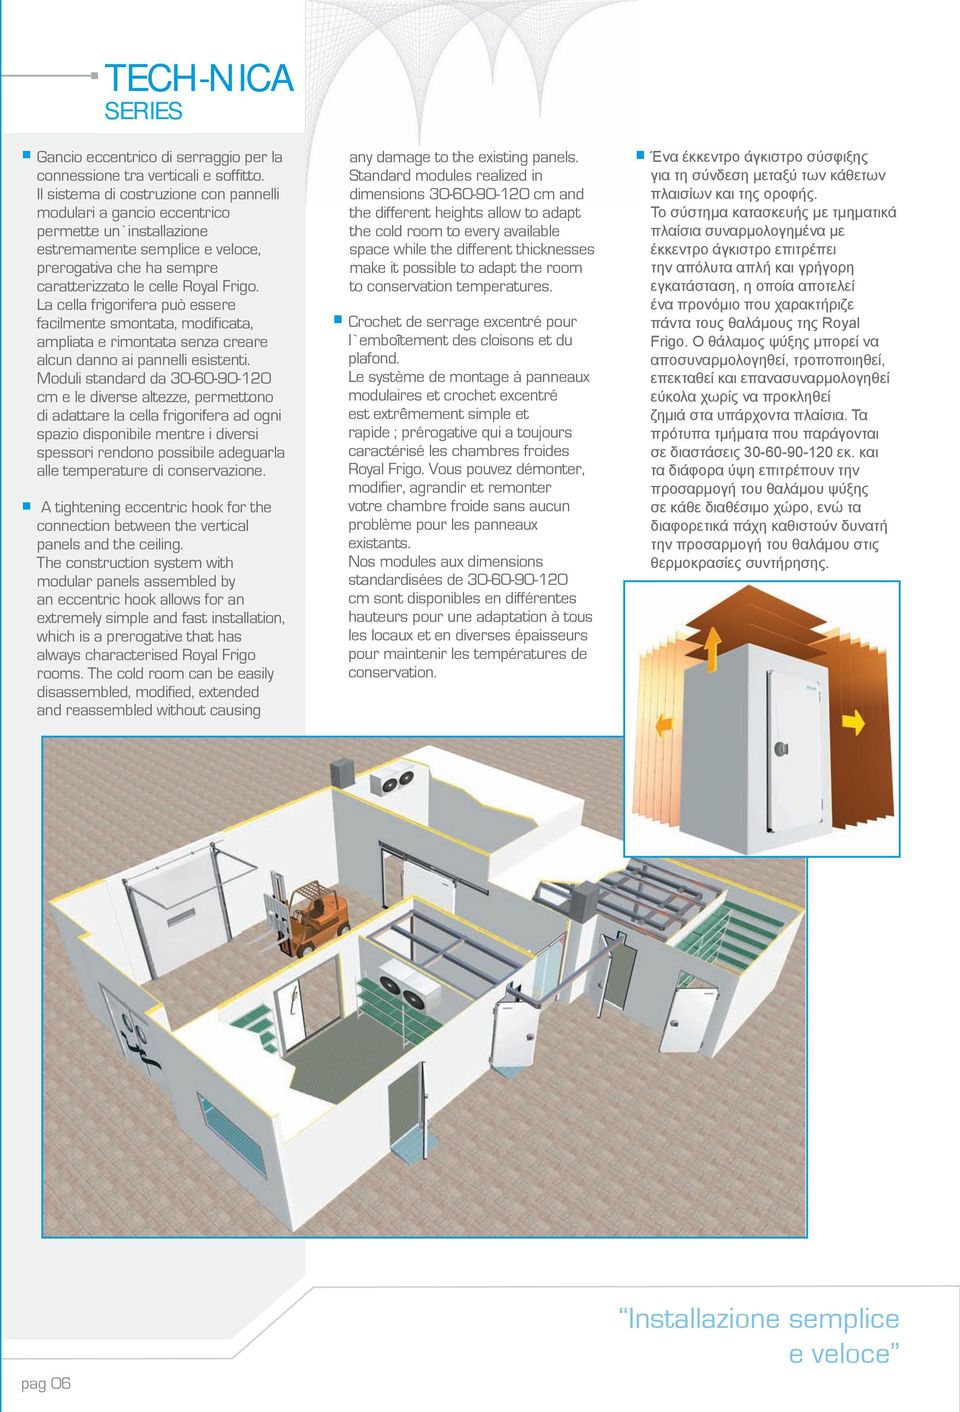 La cella frigorifera può essere facilmente smontata, modificata, ampliata e rimontata senza creare alcun danno ai pannelli esistenti.